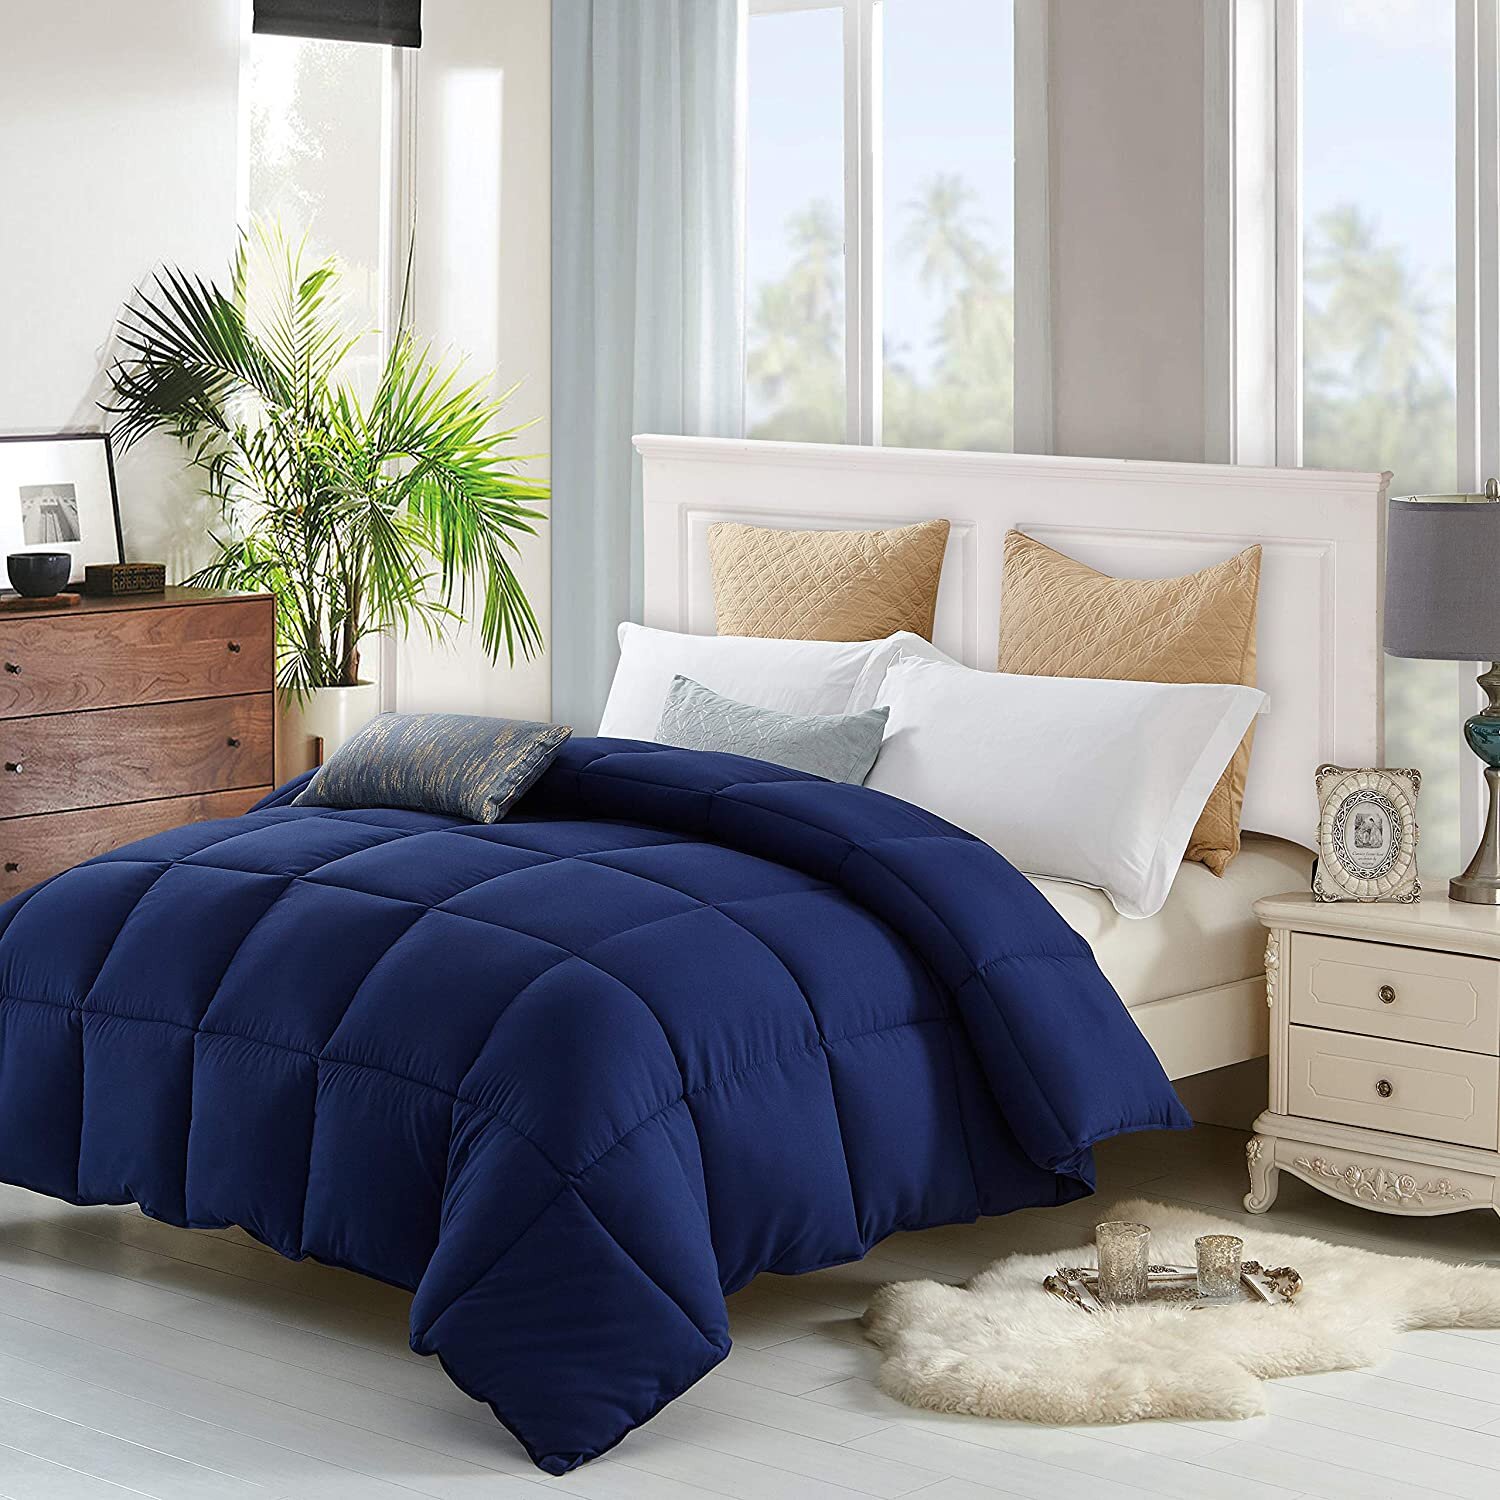 Lavish Comforts Comforter  Reviews Wayfair